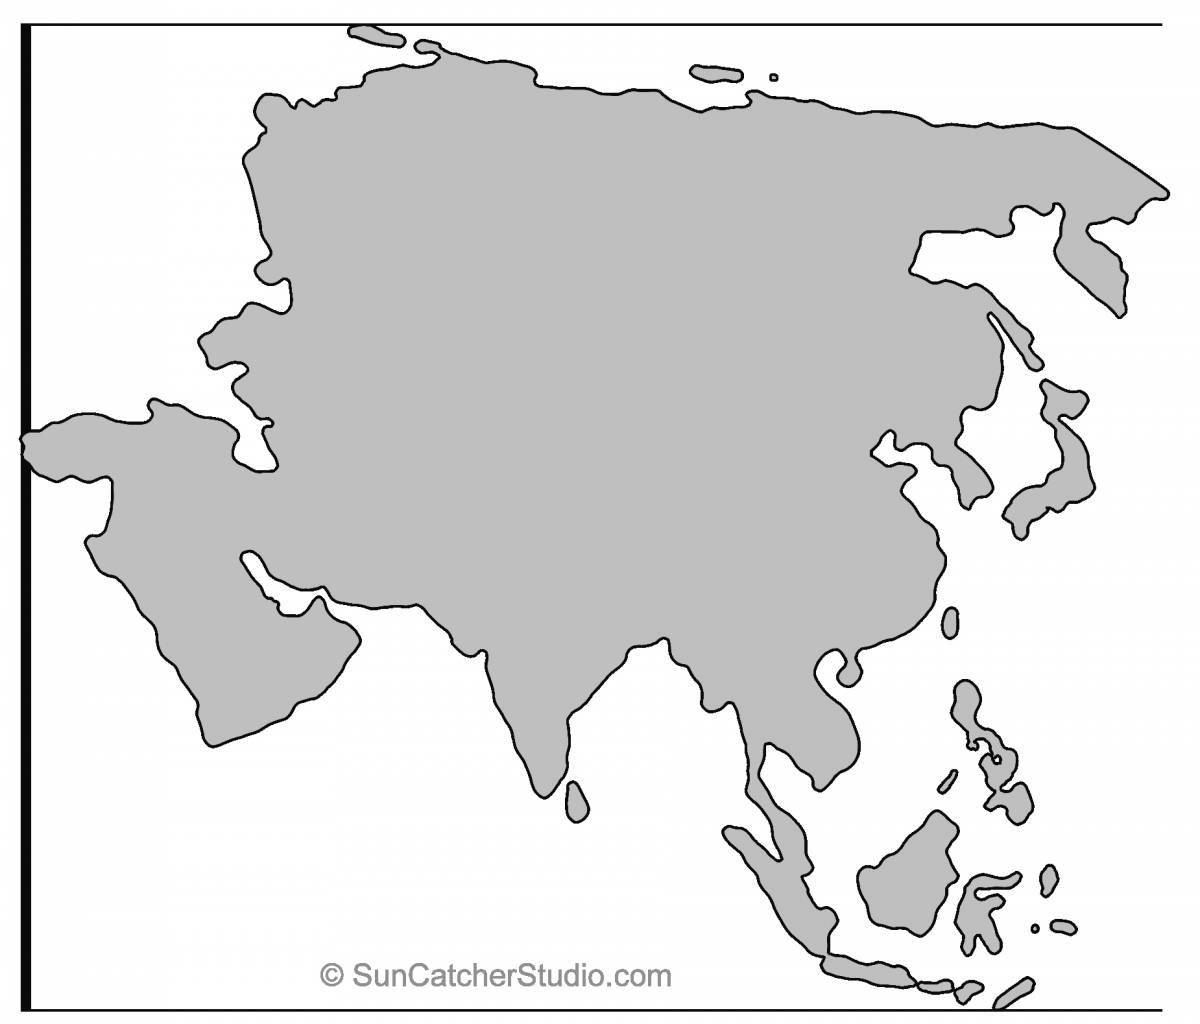 Подробная страница раскраски карты азии